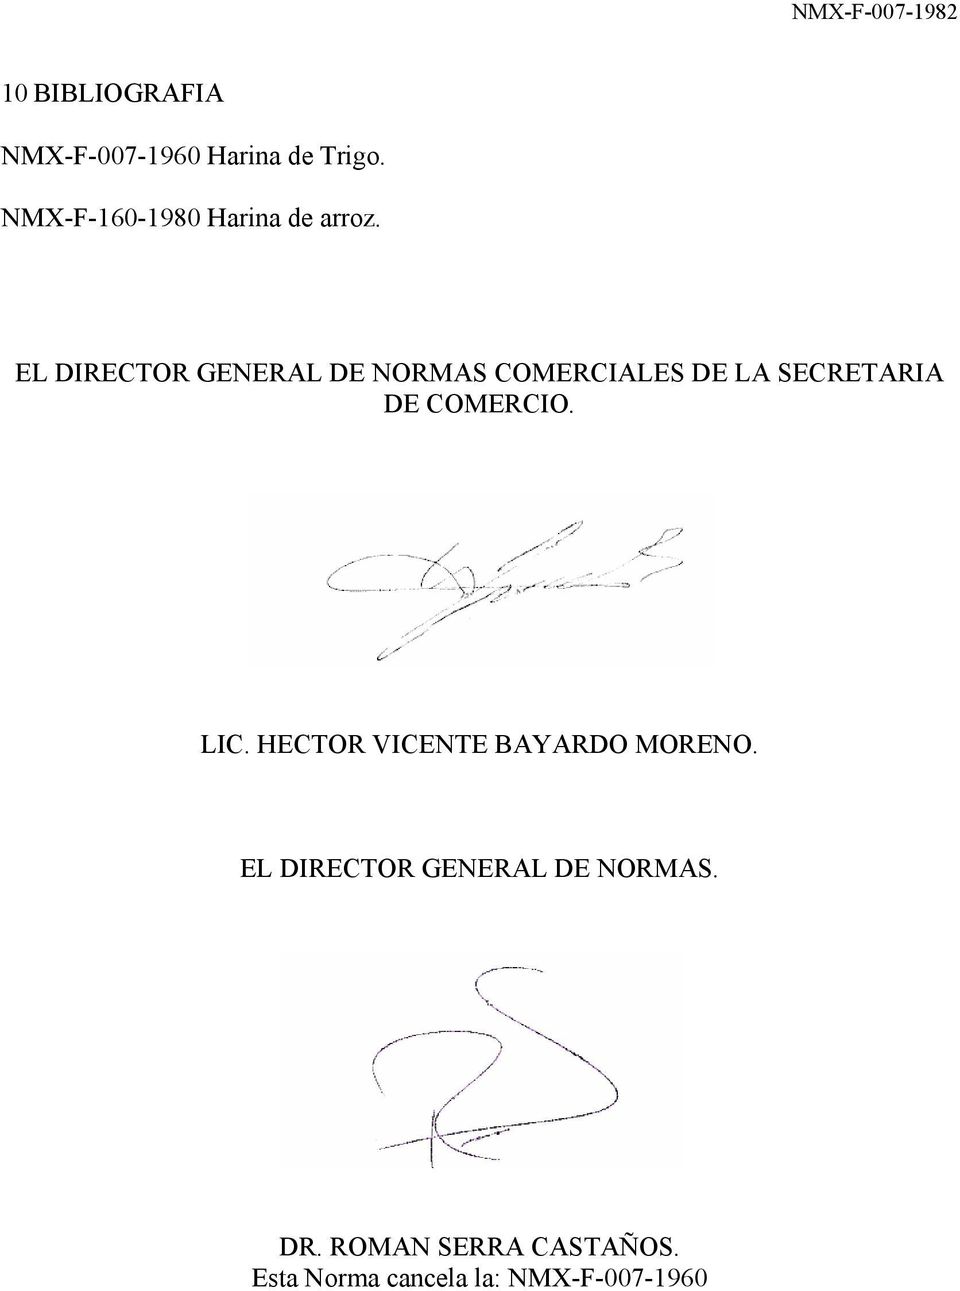 EL DIRECTOR GENERAL DE NORMAS COMERCIALES DE LA SECRETARIA DE COMERCIO.